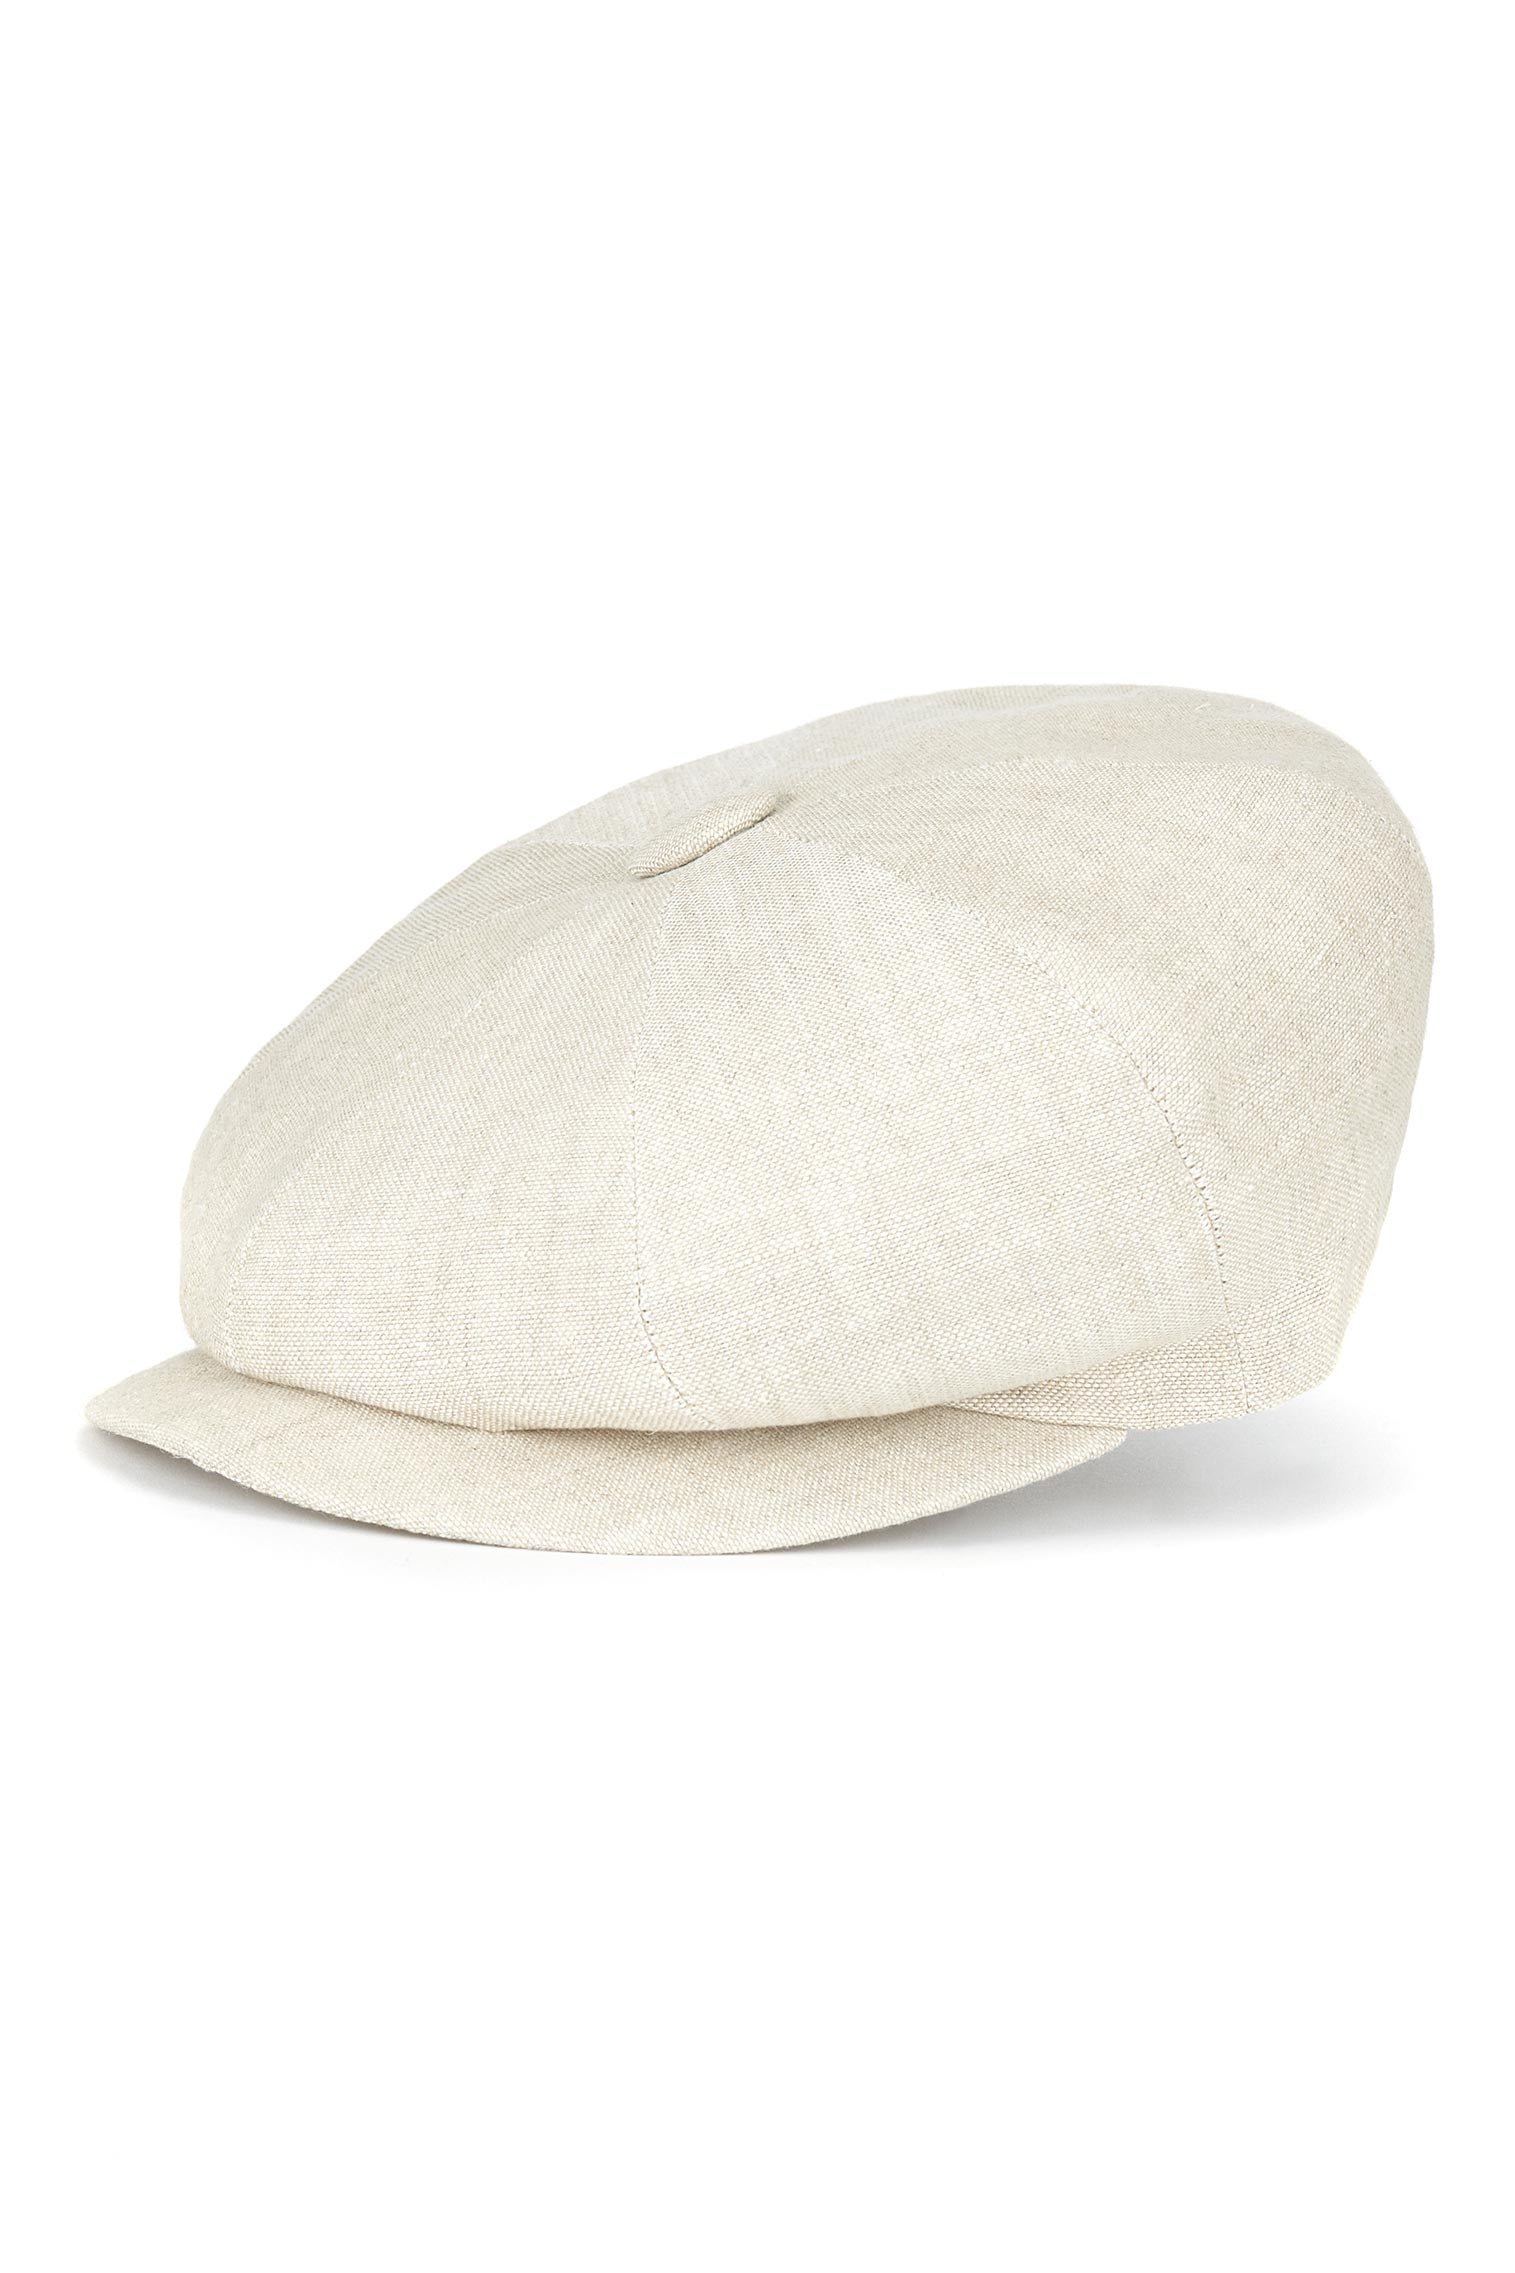 Linen Muirfield Bakerboy Cap - Best Selling Hats - Lock & Co. Hatters London UK